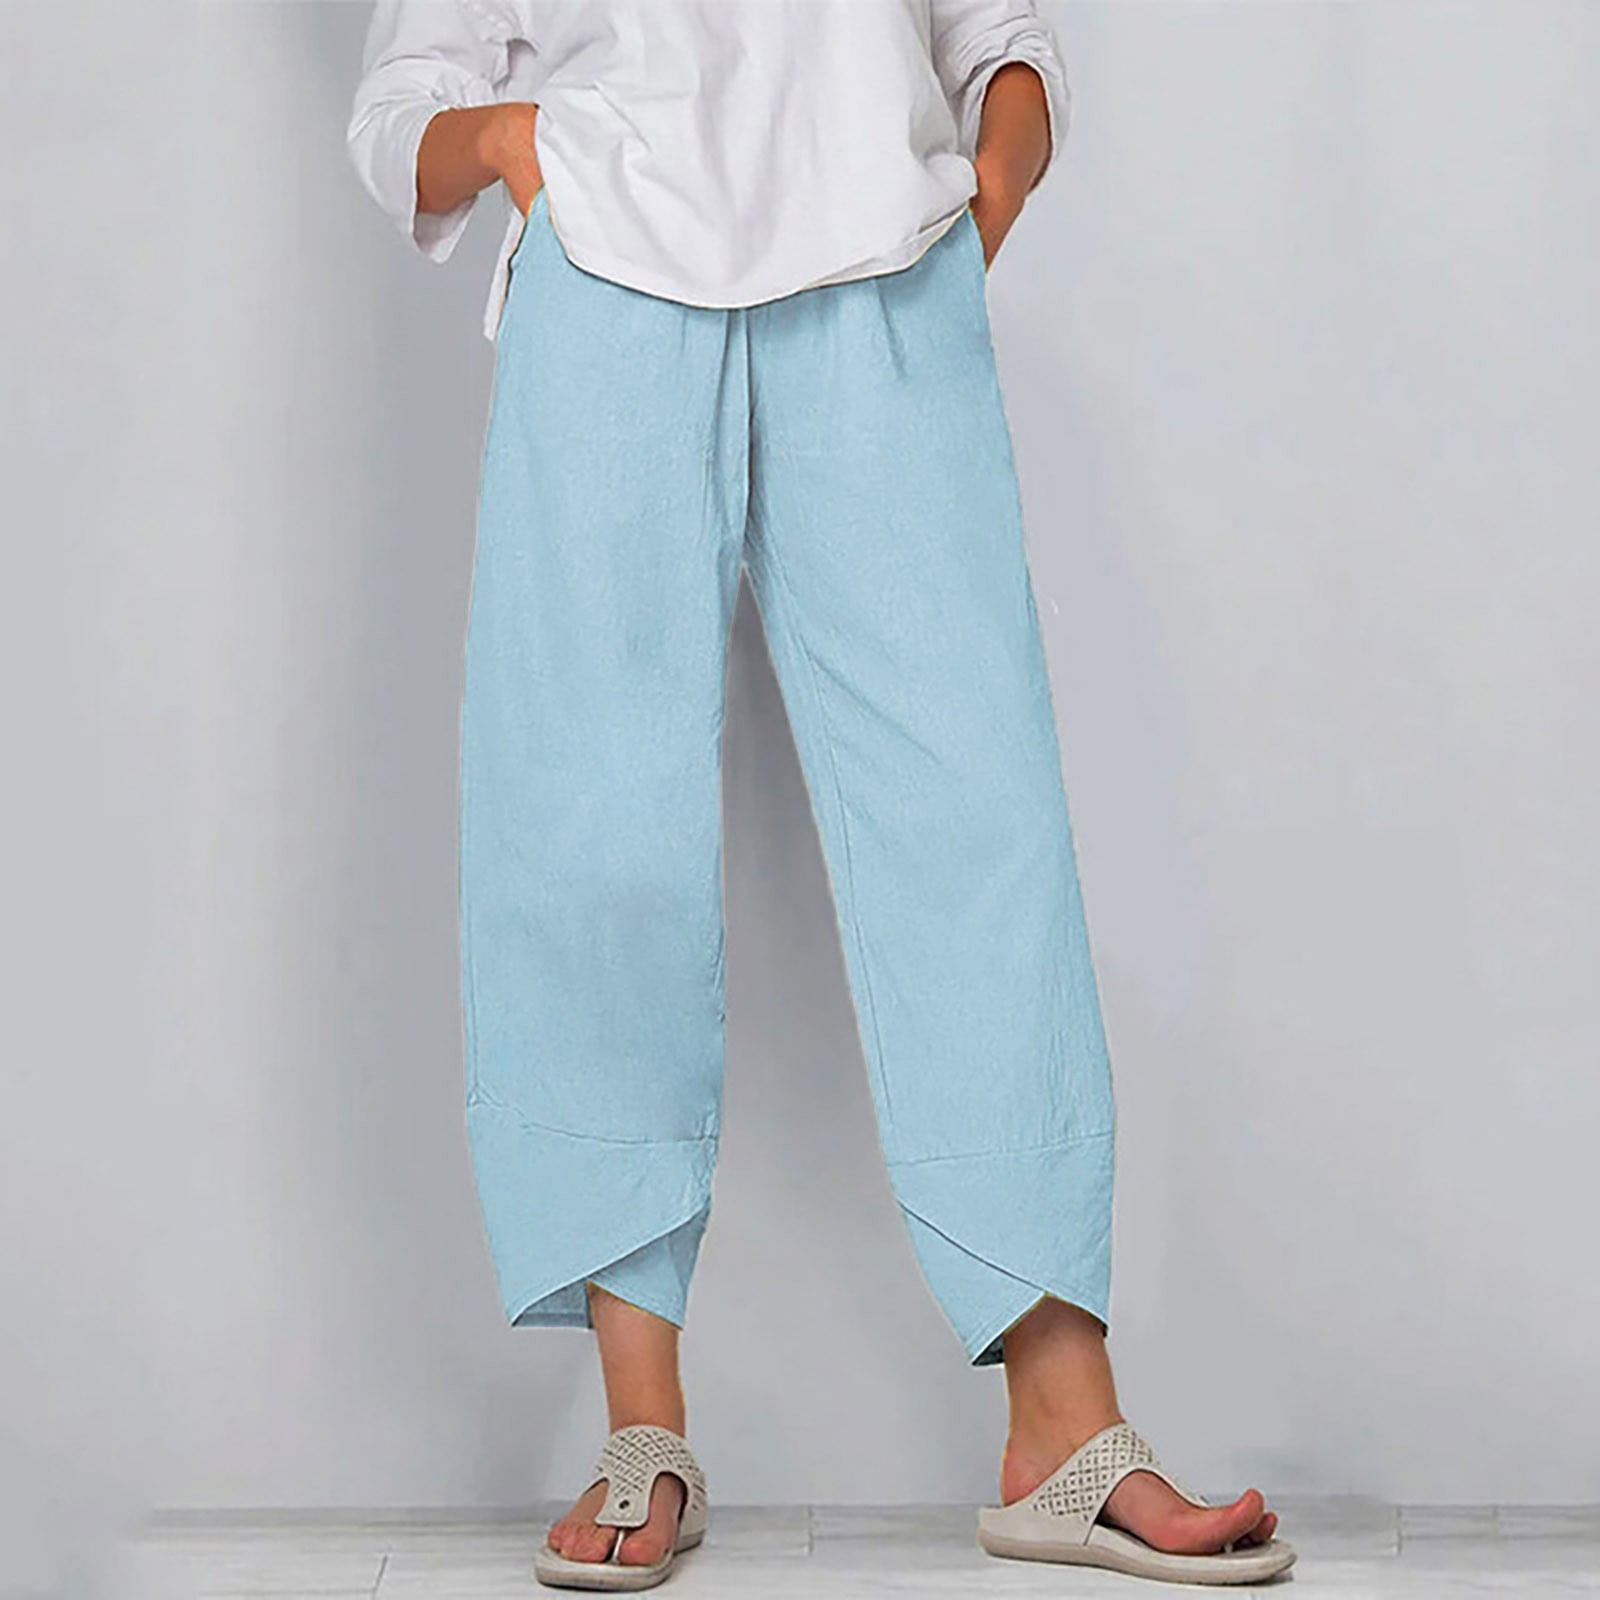 roliyen Summer Pants for Women Casual Pockets Cotton Linen Wide Leg ...